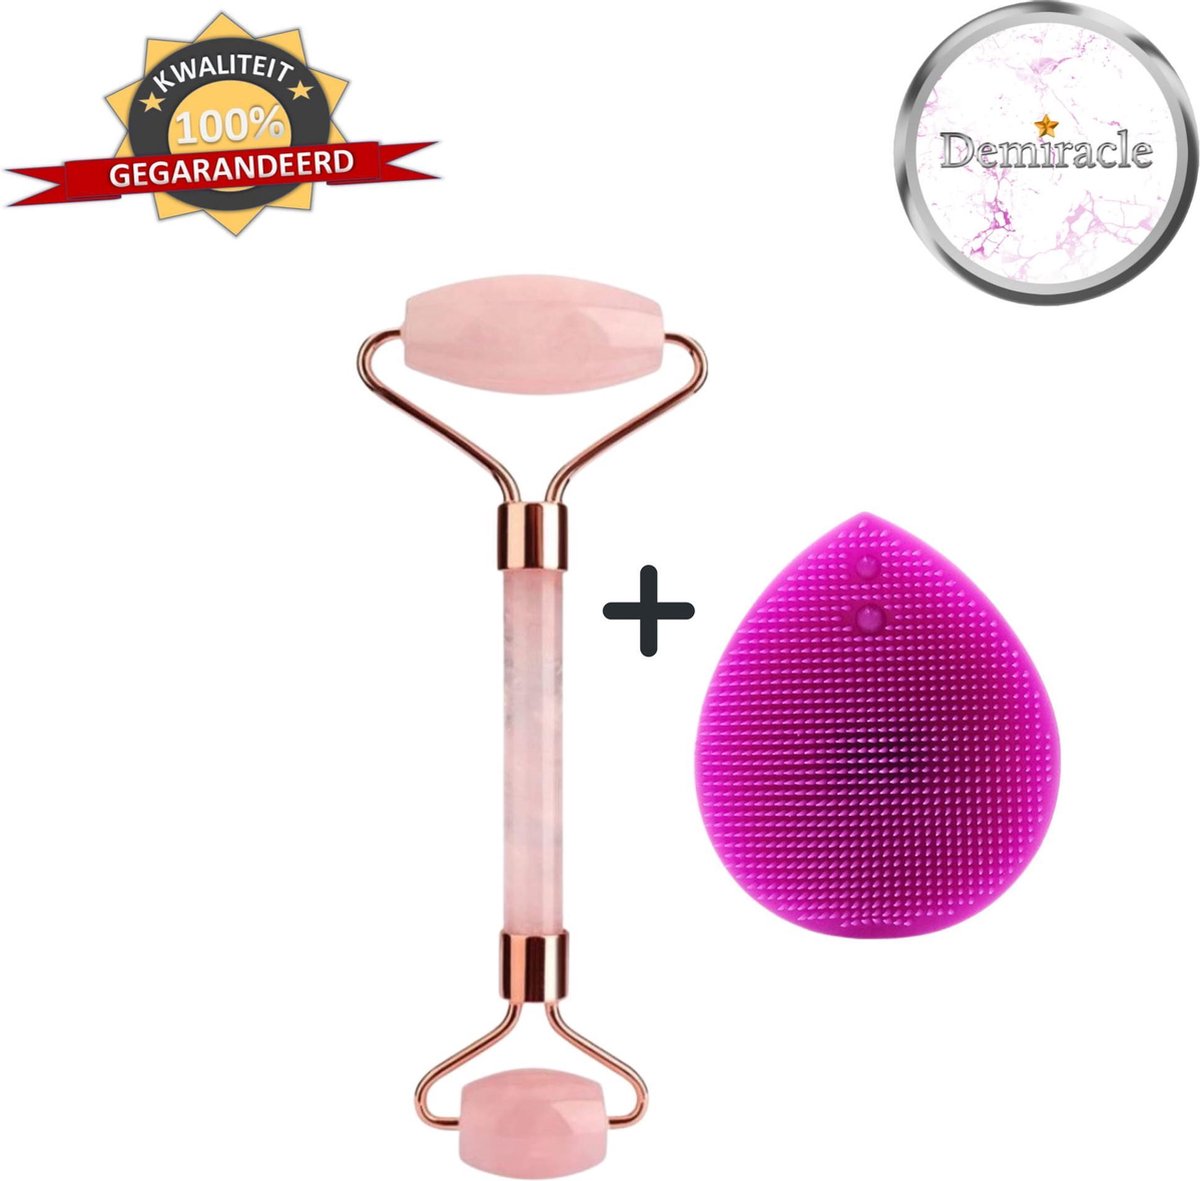 Demiracle Rose Quartz Face Roller met Paarse Siliconen Gezichtsborstel - Valentijnsdag - Cadeau - Gezichtsroller - Massage Roller - Jade Roller - Rimpelverwijdering - Ontspanning - Kwaliteit